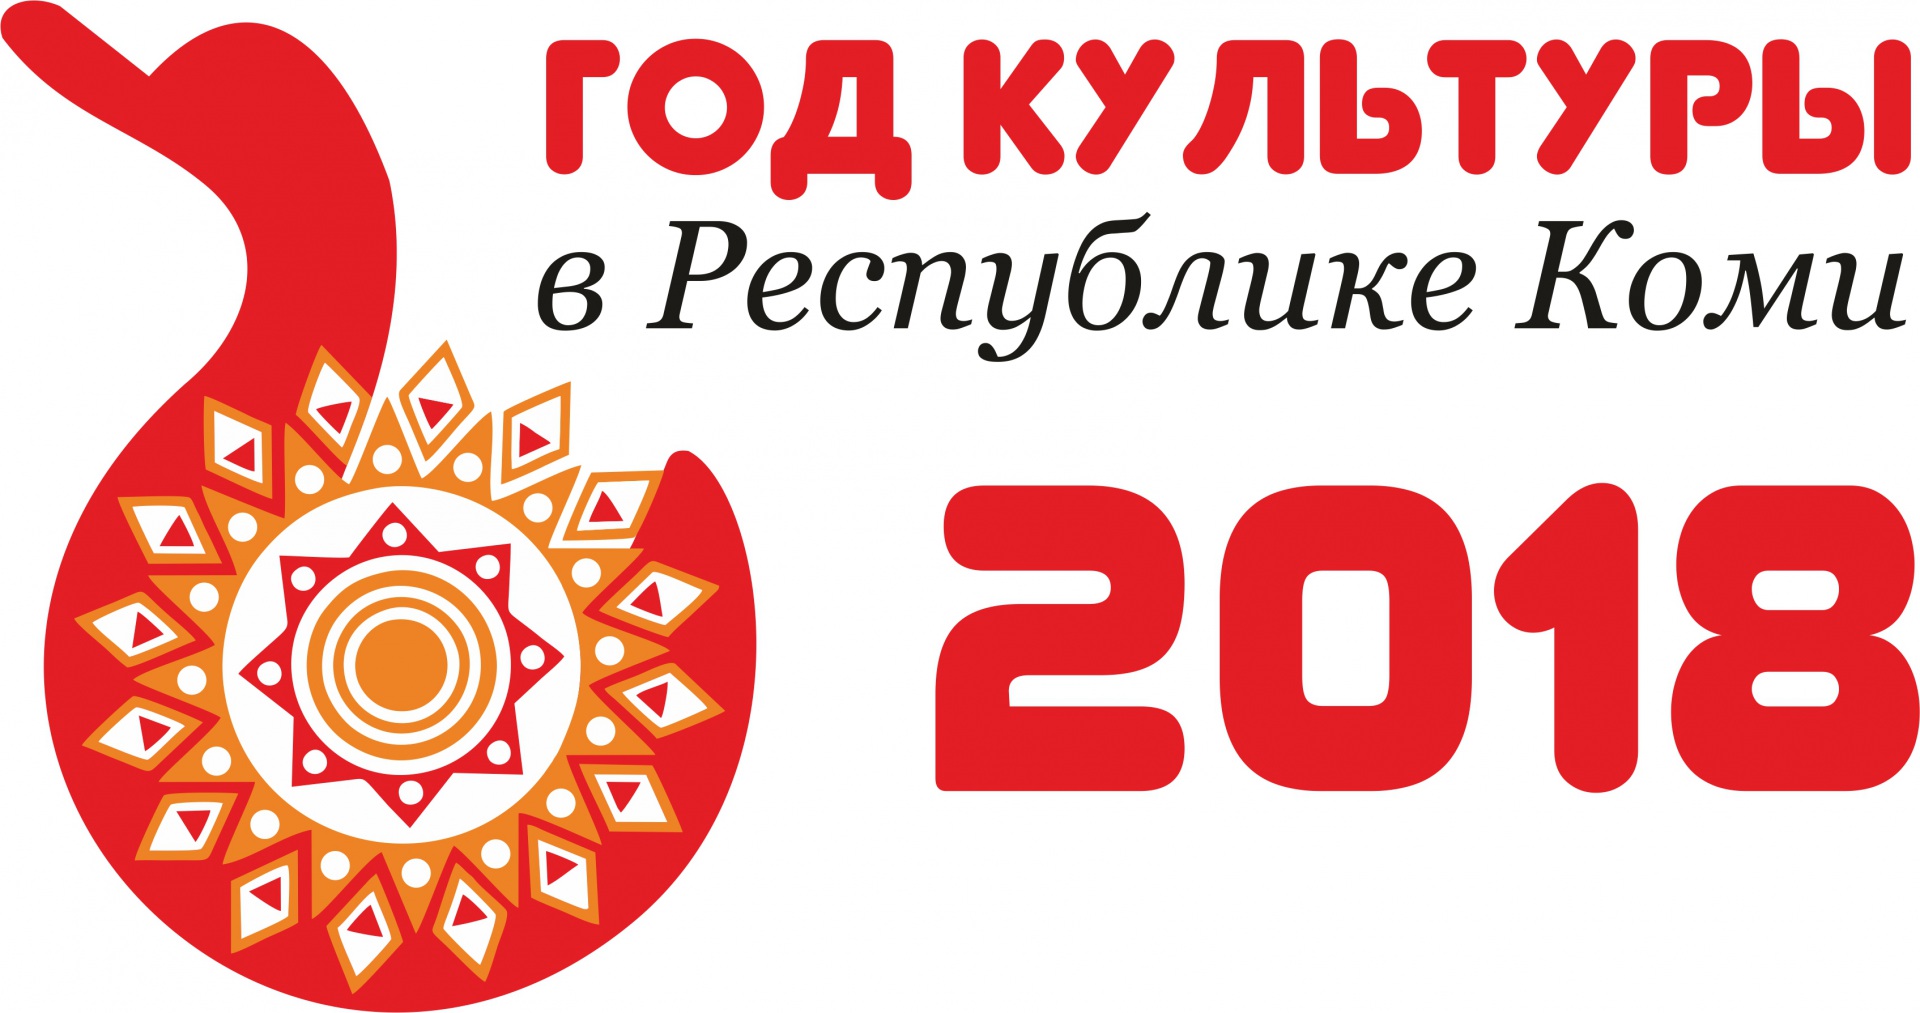 Logotip-goda-kultury-v-RK.jpg